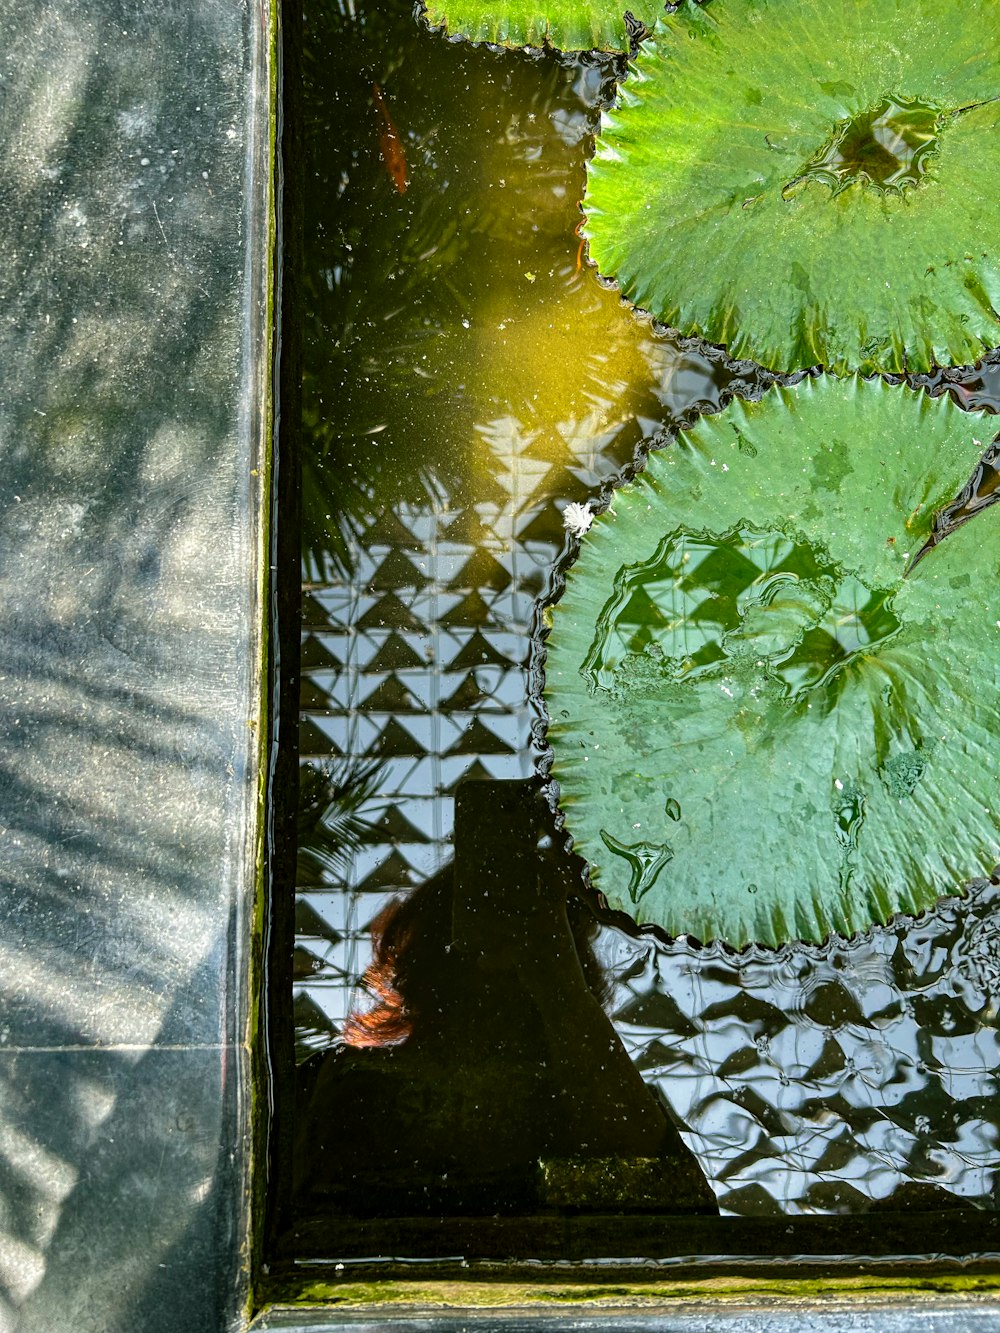 수련과 녹색 잎으로 가득 찬 연못